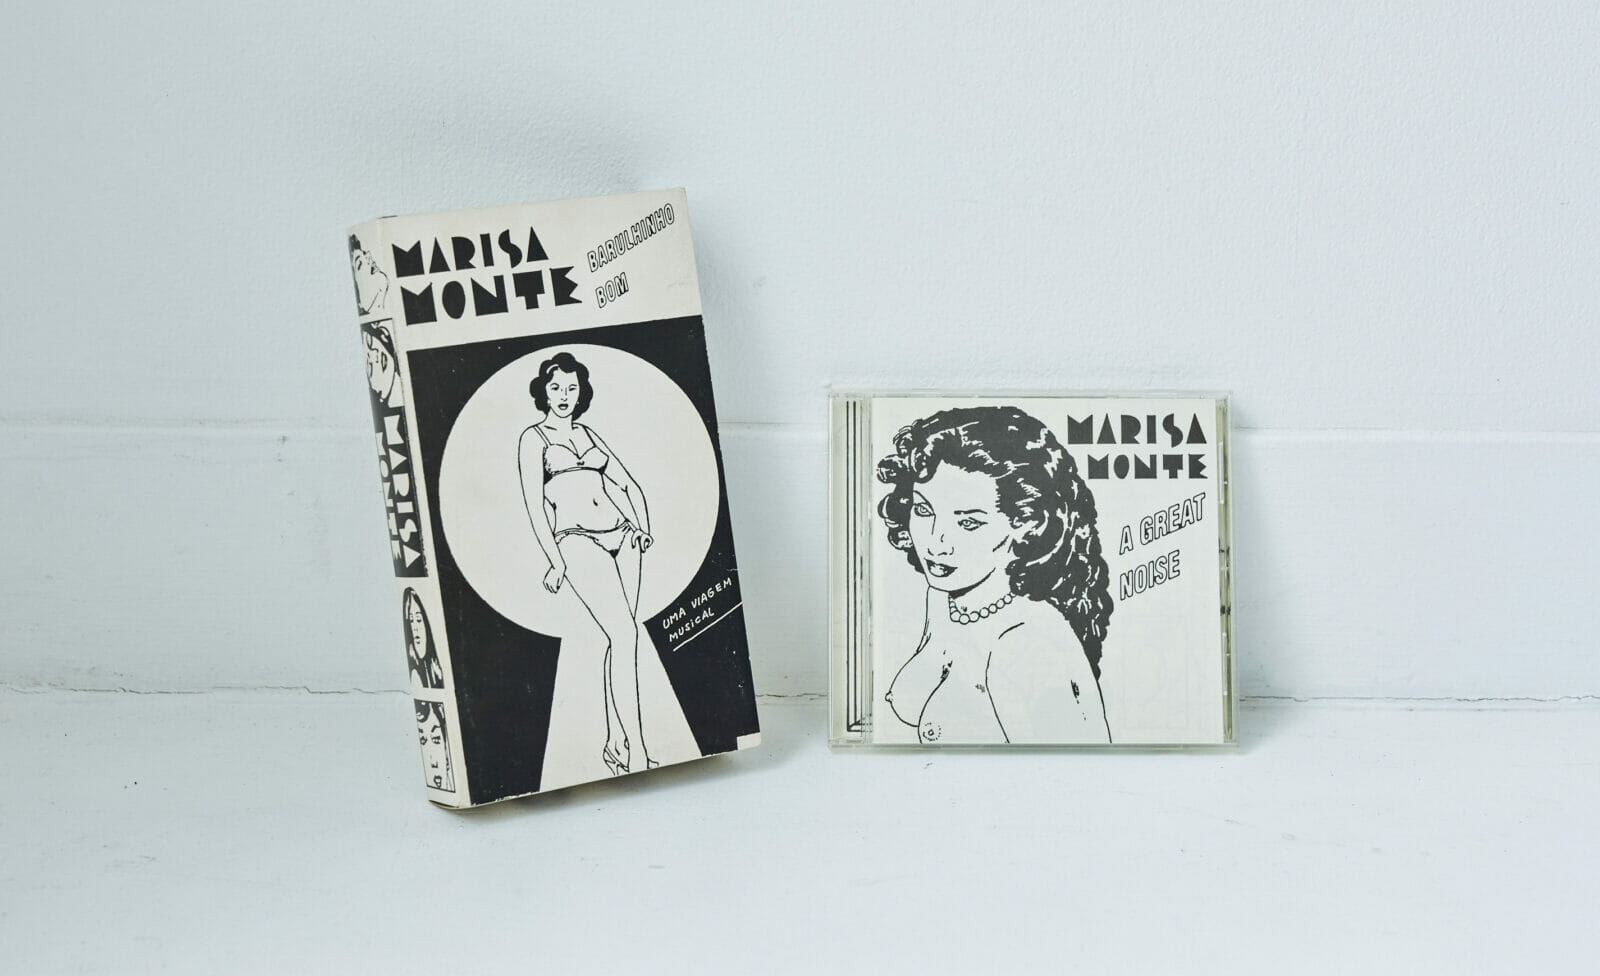 ブラジルの公務員兼ポルノコミック作家C・ゼフィーロが描くマリーザ・モンチのVHSとCDセット。